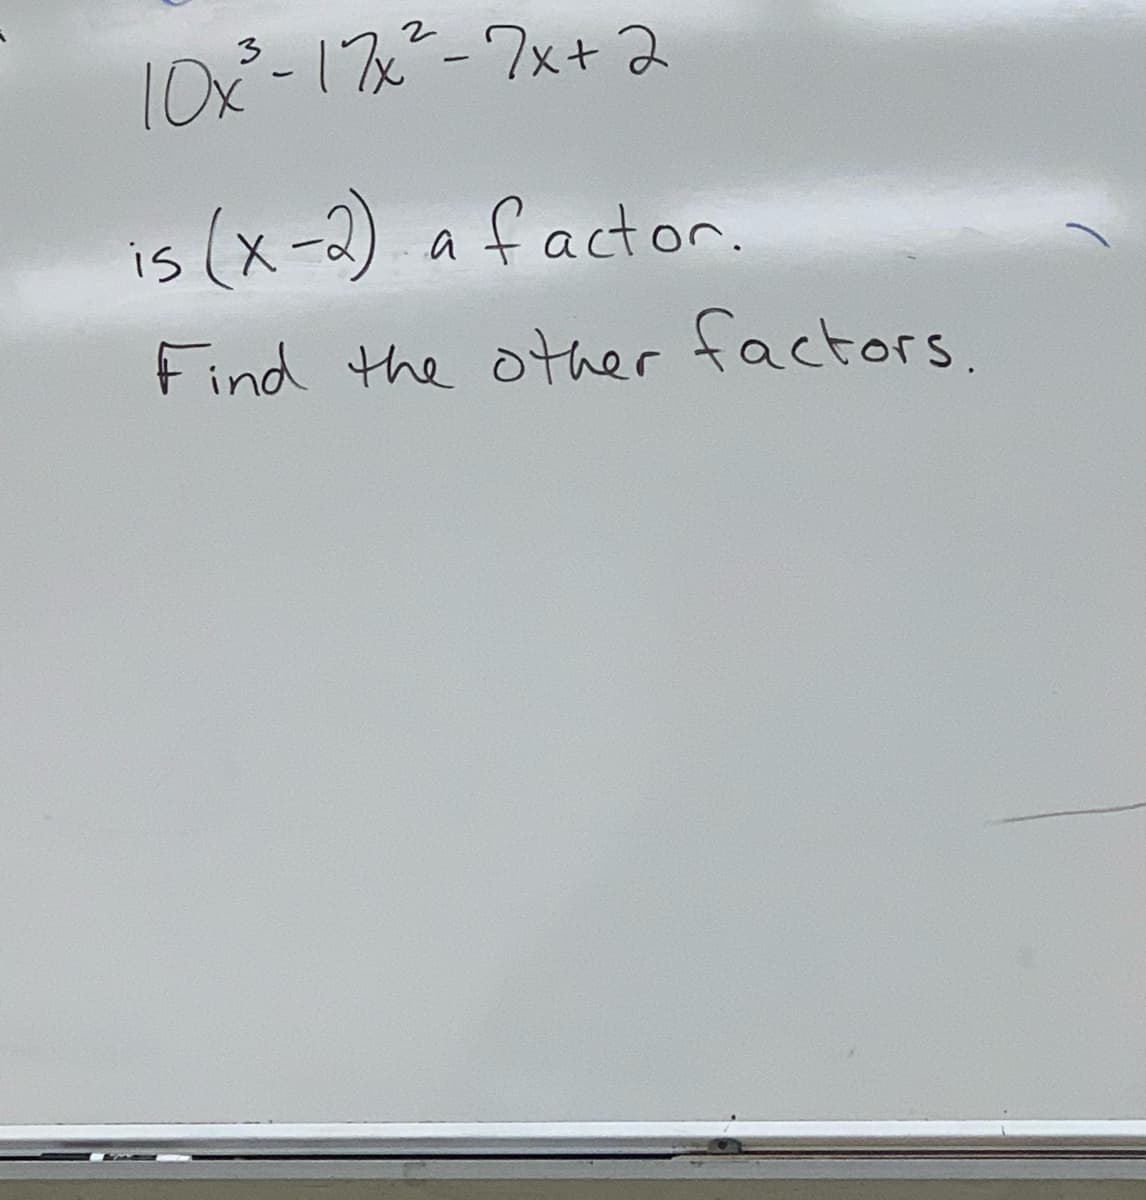 10ペ-178--7x+2
is (x-2)
a factor.
Find the other factors.
